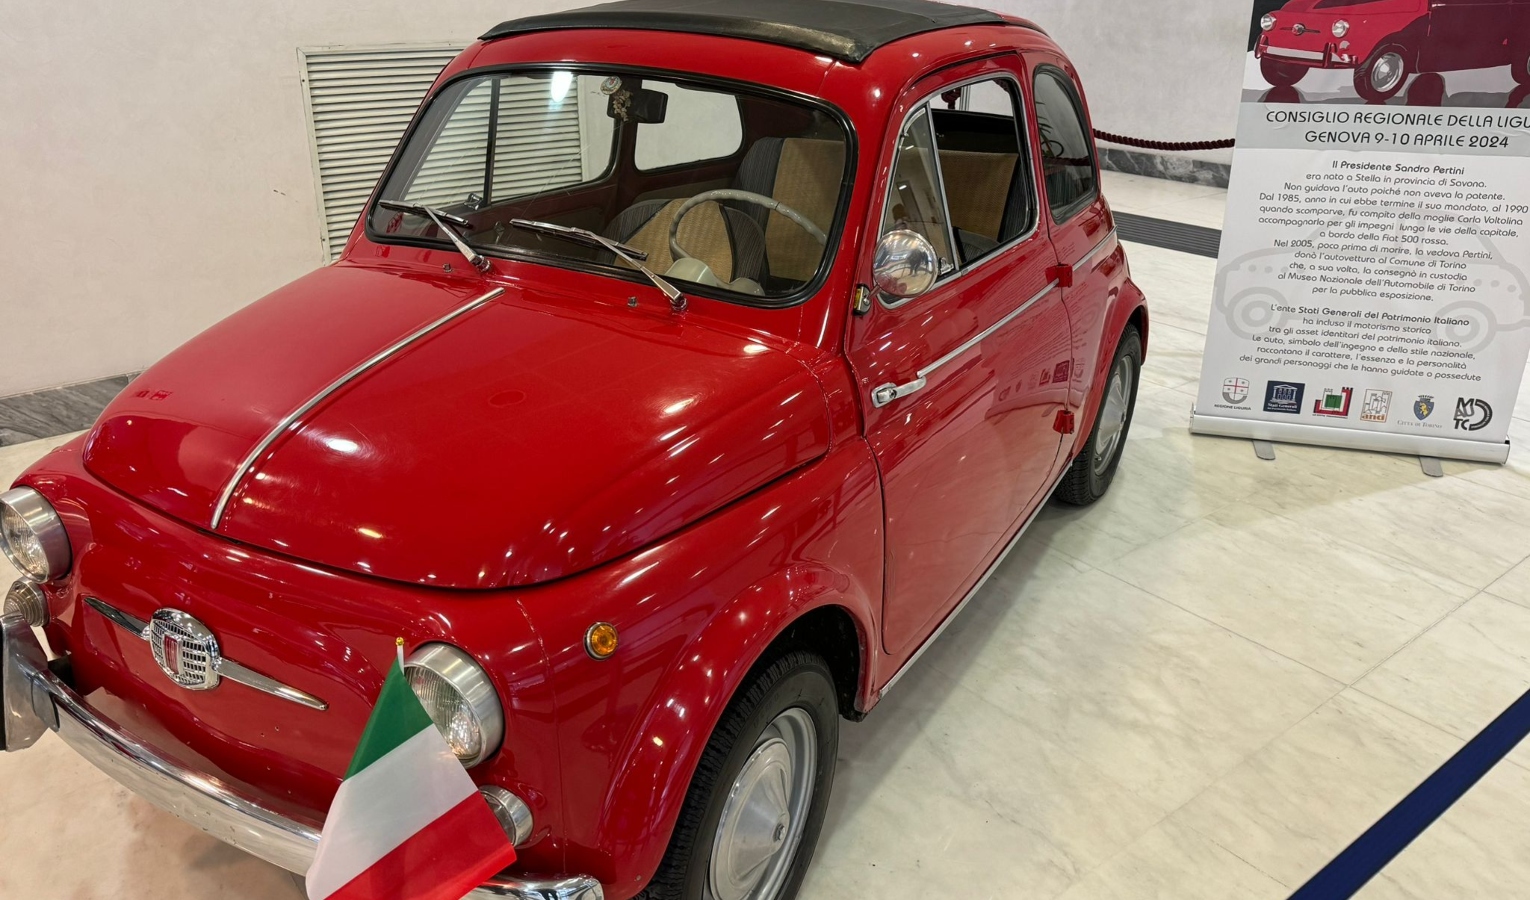 In consiglio regionale ecco la storica Fiat 500 di Sandro Pertini